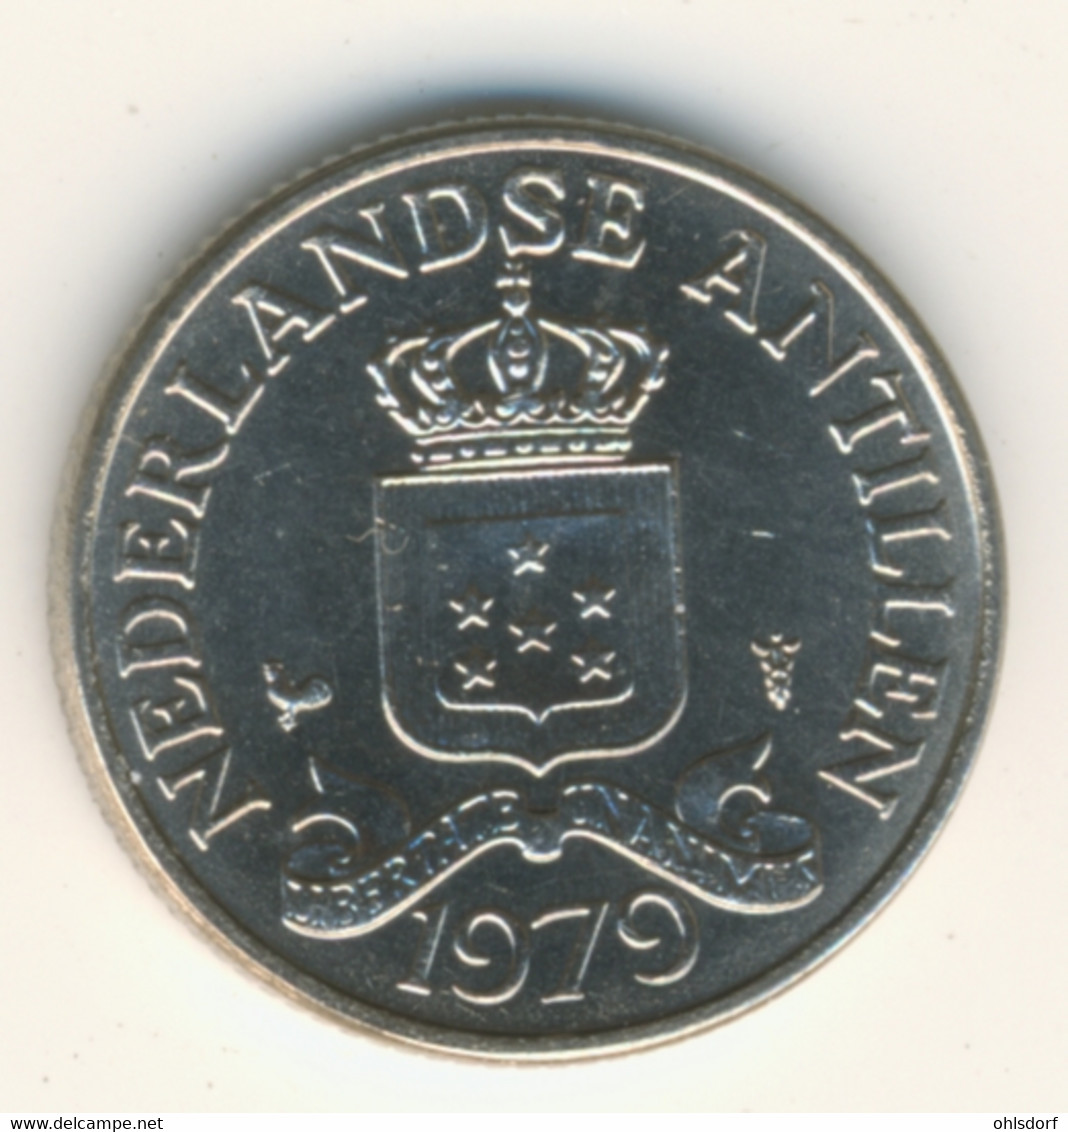 NETHERLAND ANTILLAS 1979: 25 Cents, KM 11 - Niederländische Antillen